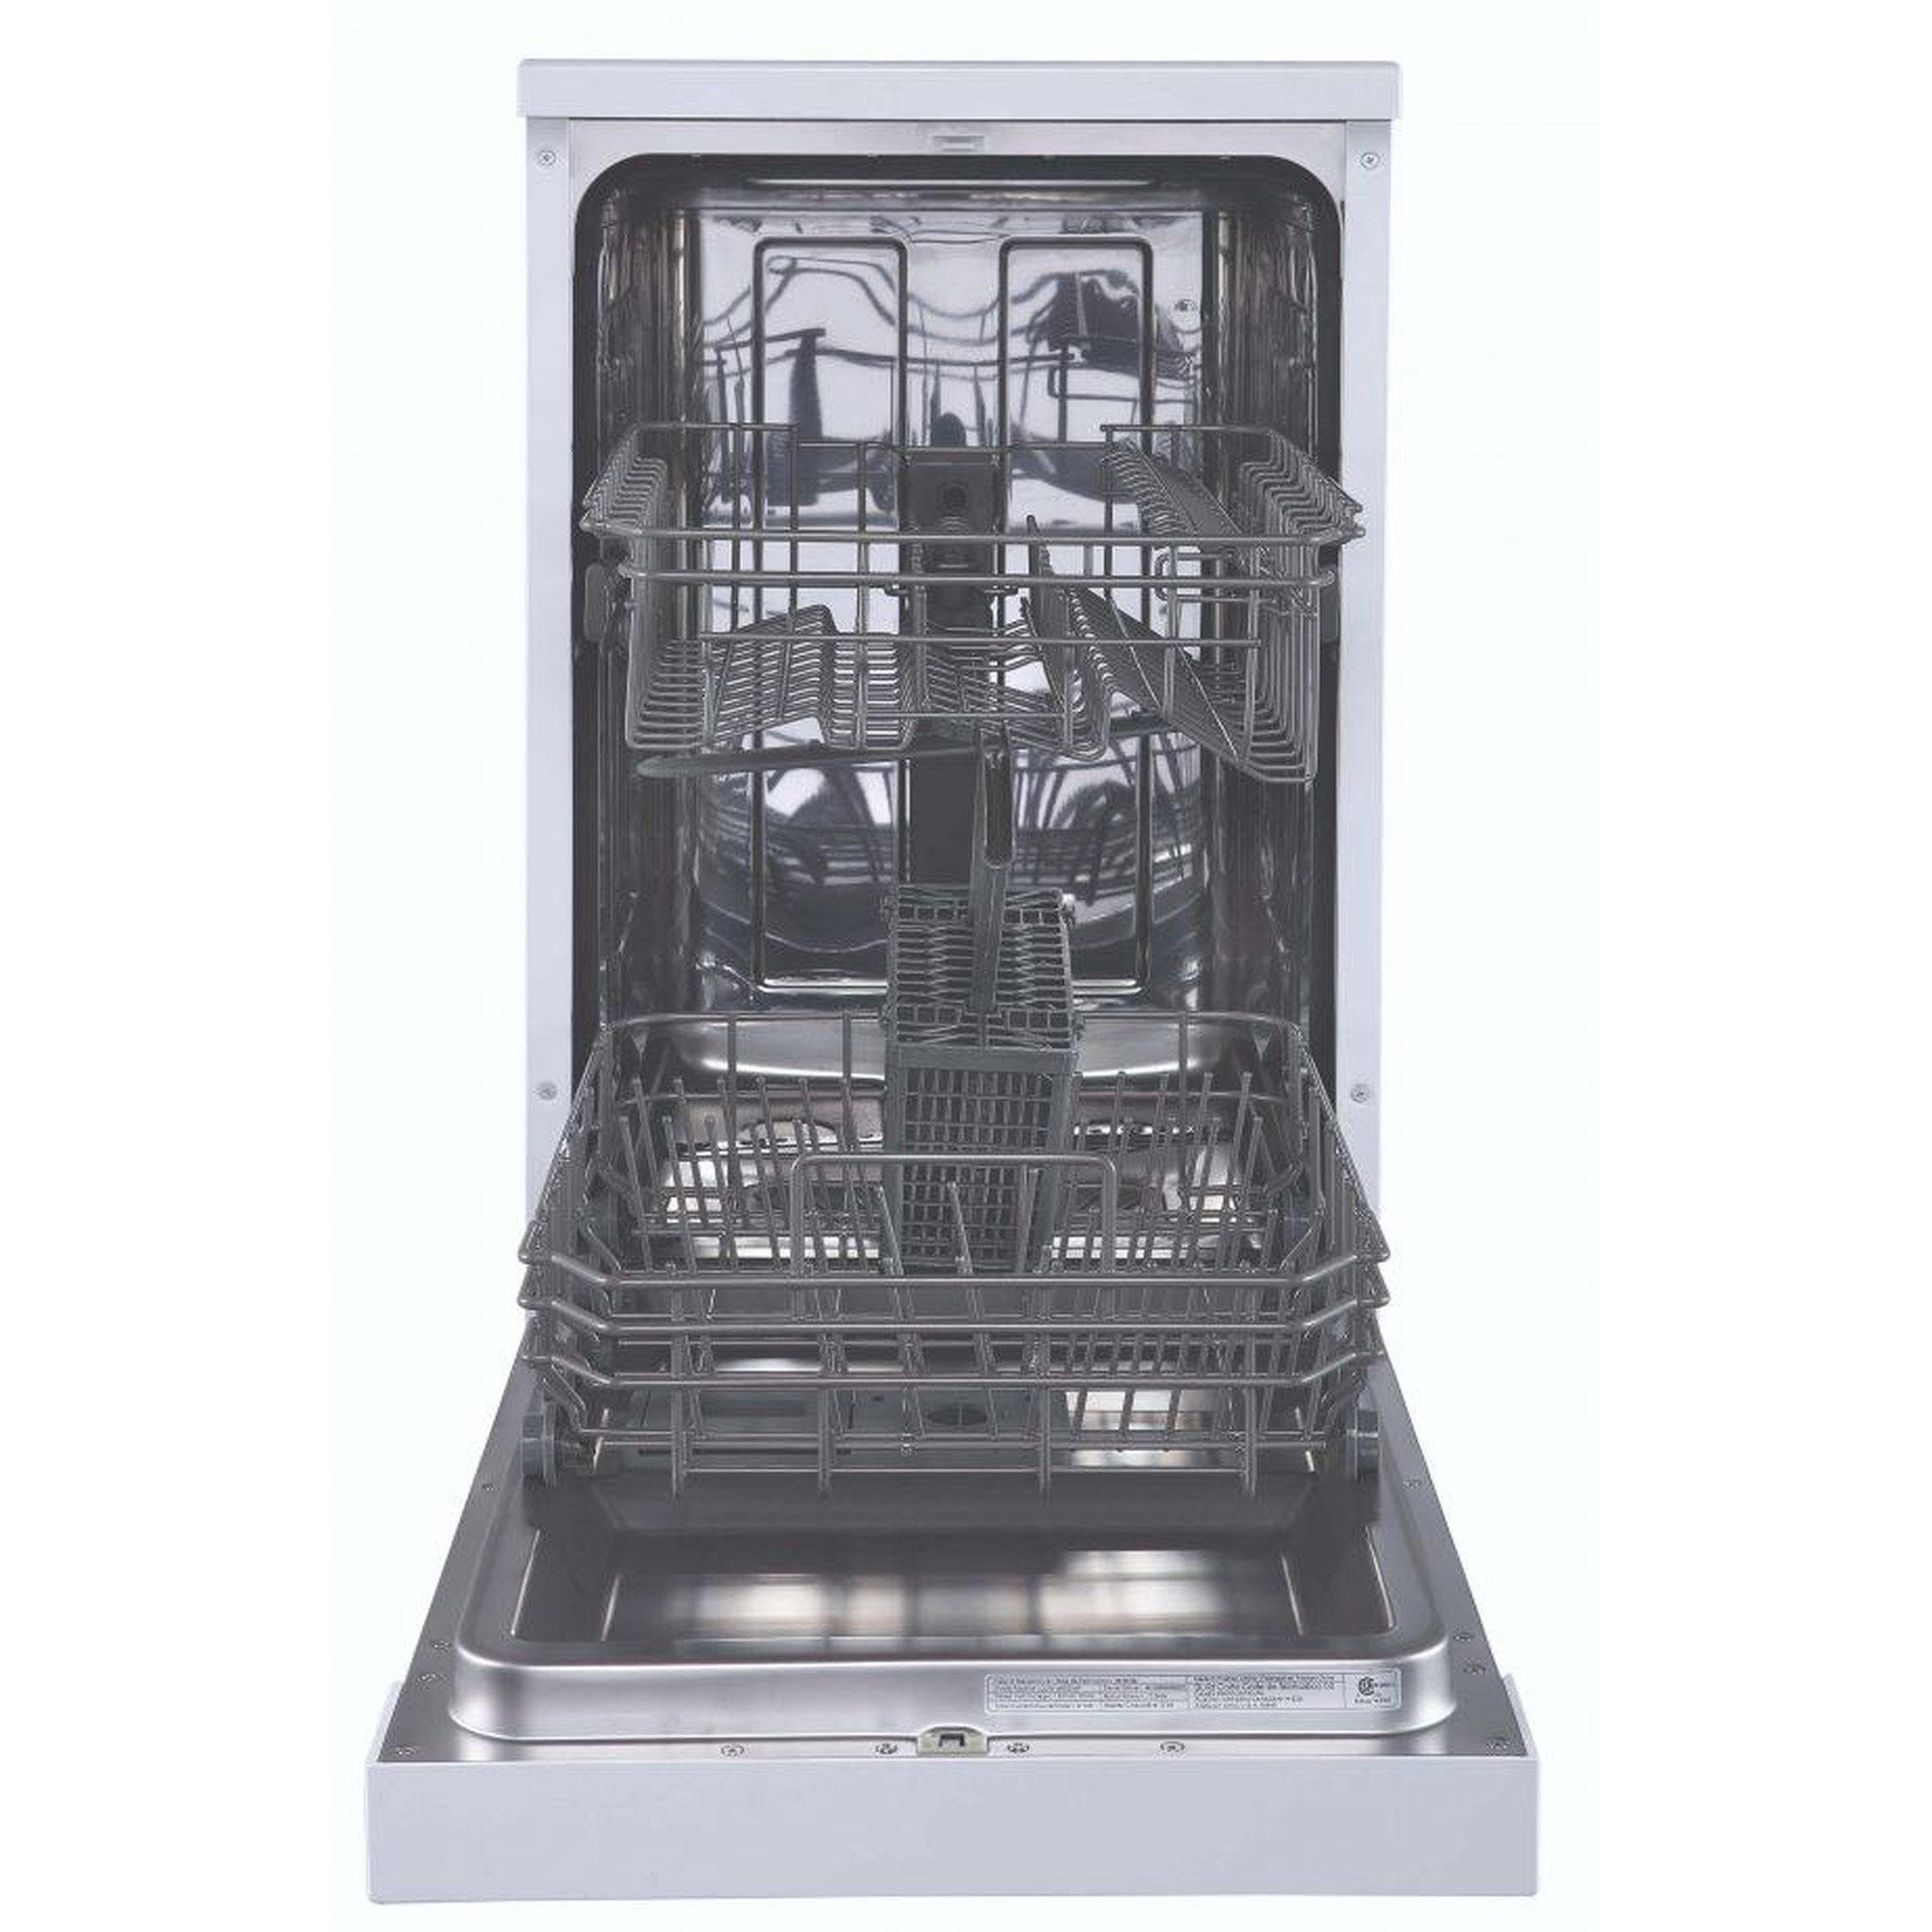 Danby DDW631SDB Built In Dishwasher